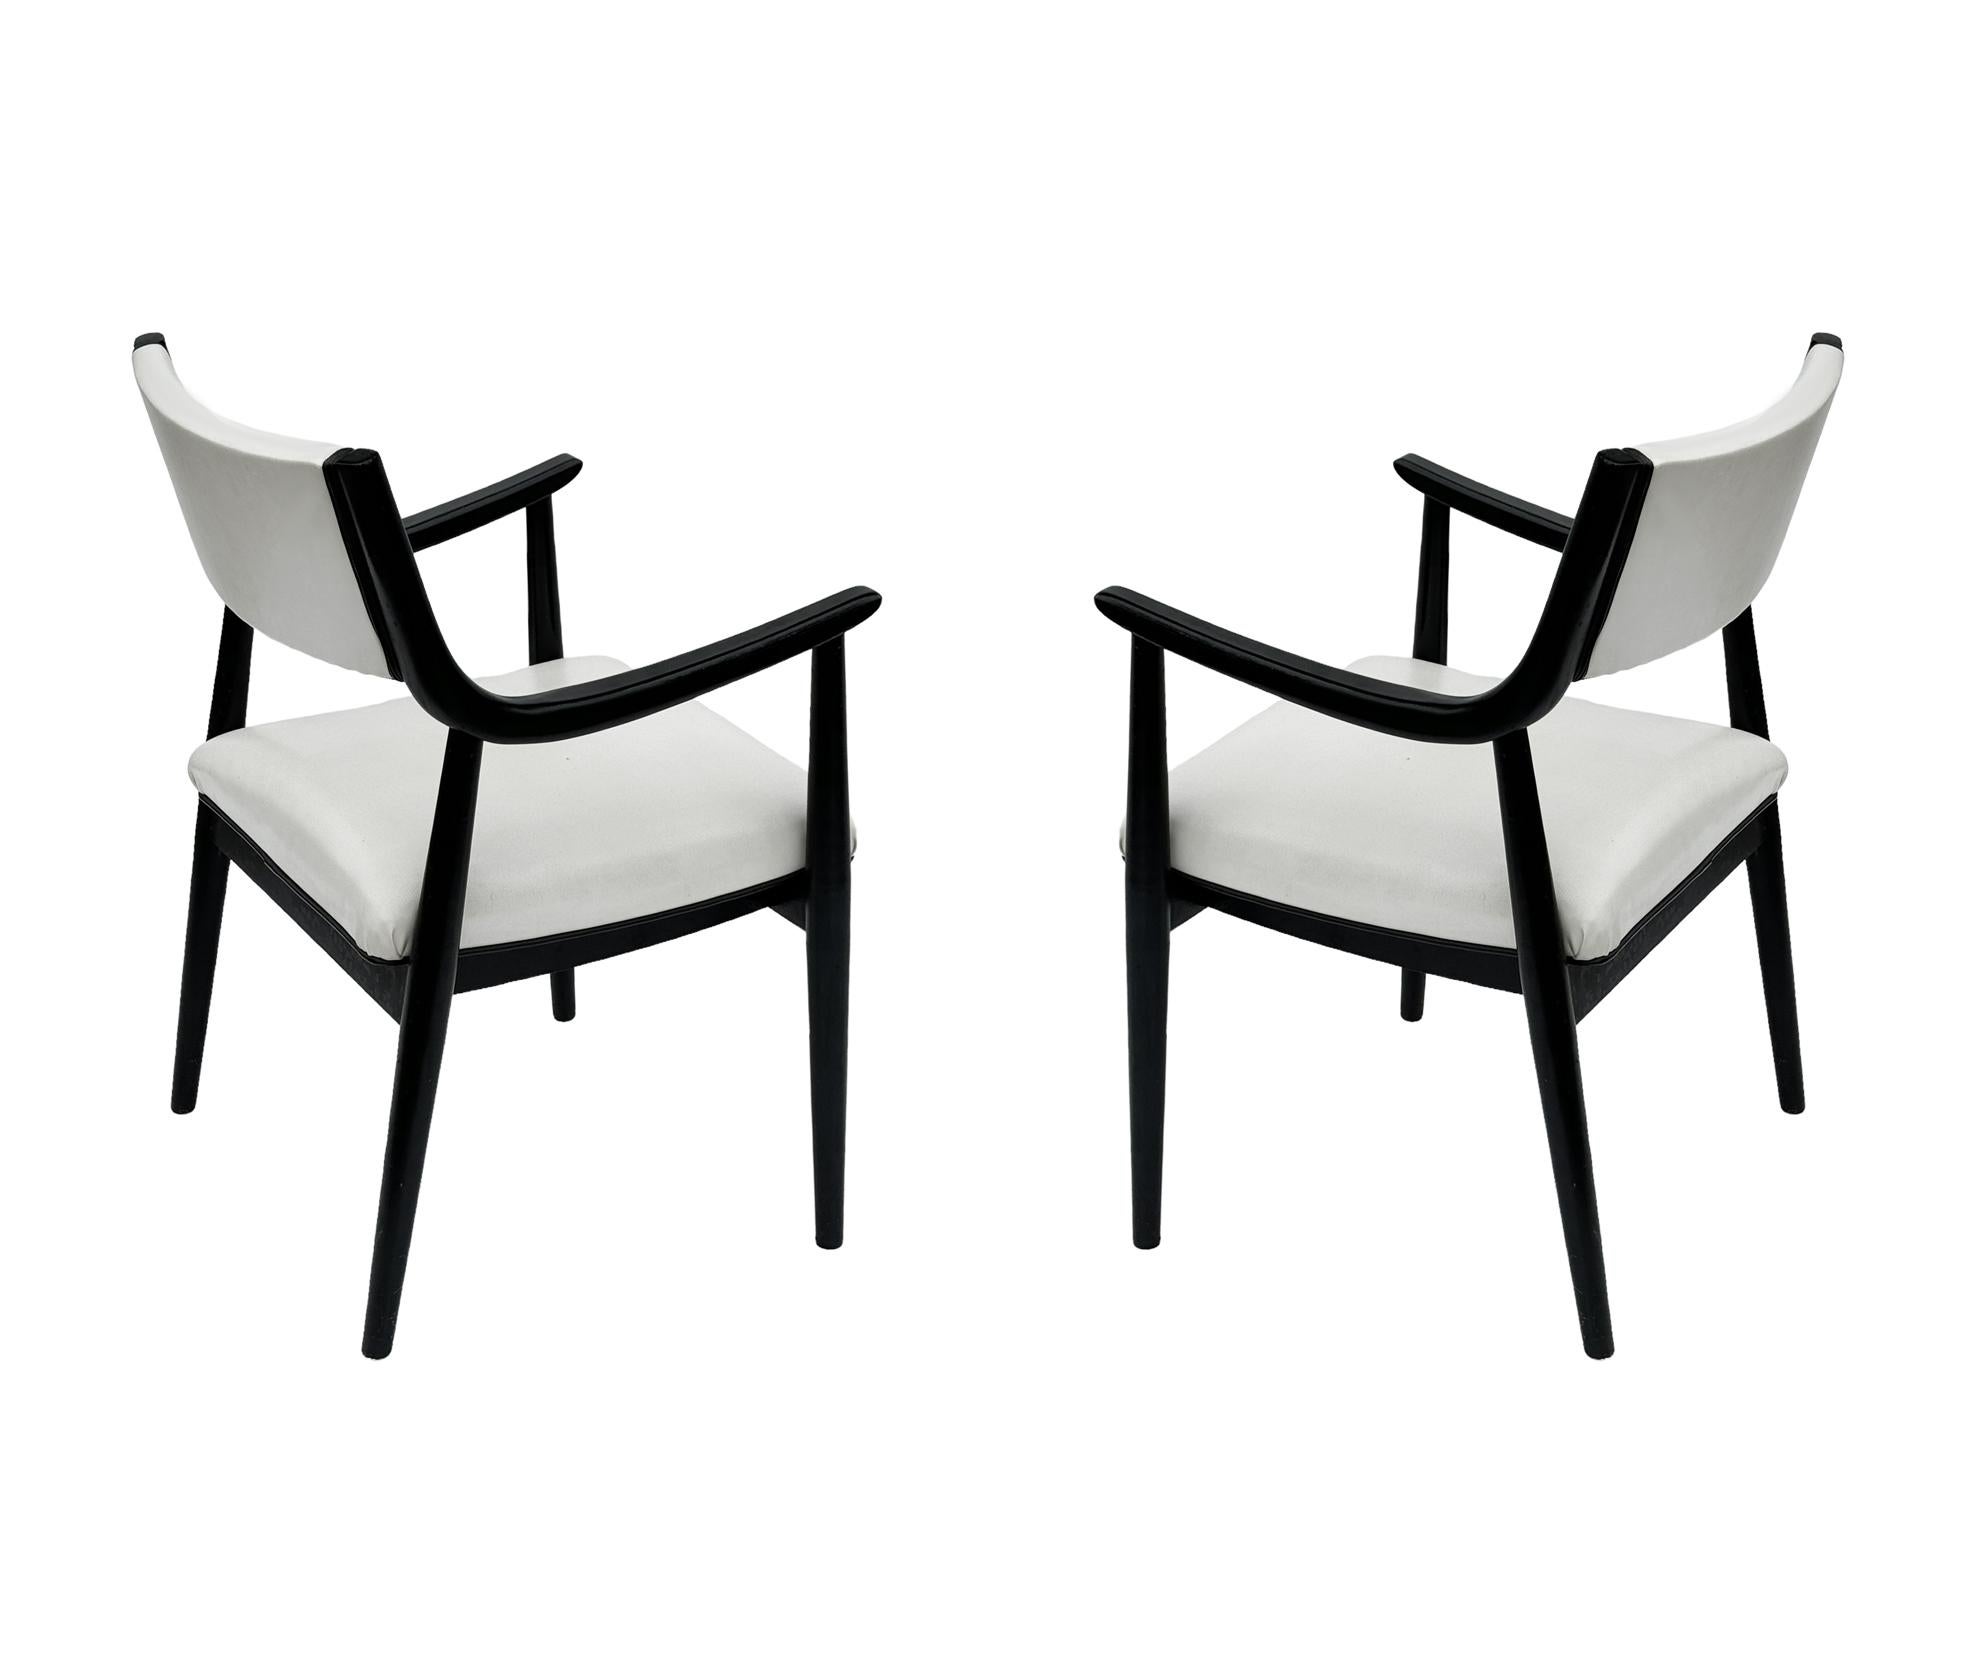 Ein sehr hübsches Paar passender Beistellstühle aus den 1950er Jahren. Sie verfügen über ein Gestell aus massiver Eiche mit schwarzem Lack und weißer Naugahyde-Polsterung. 